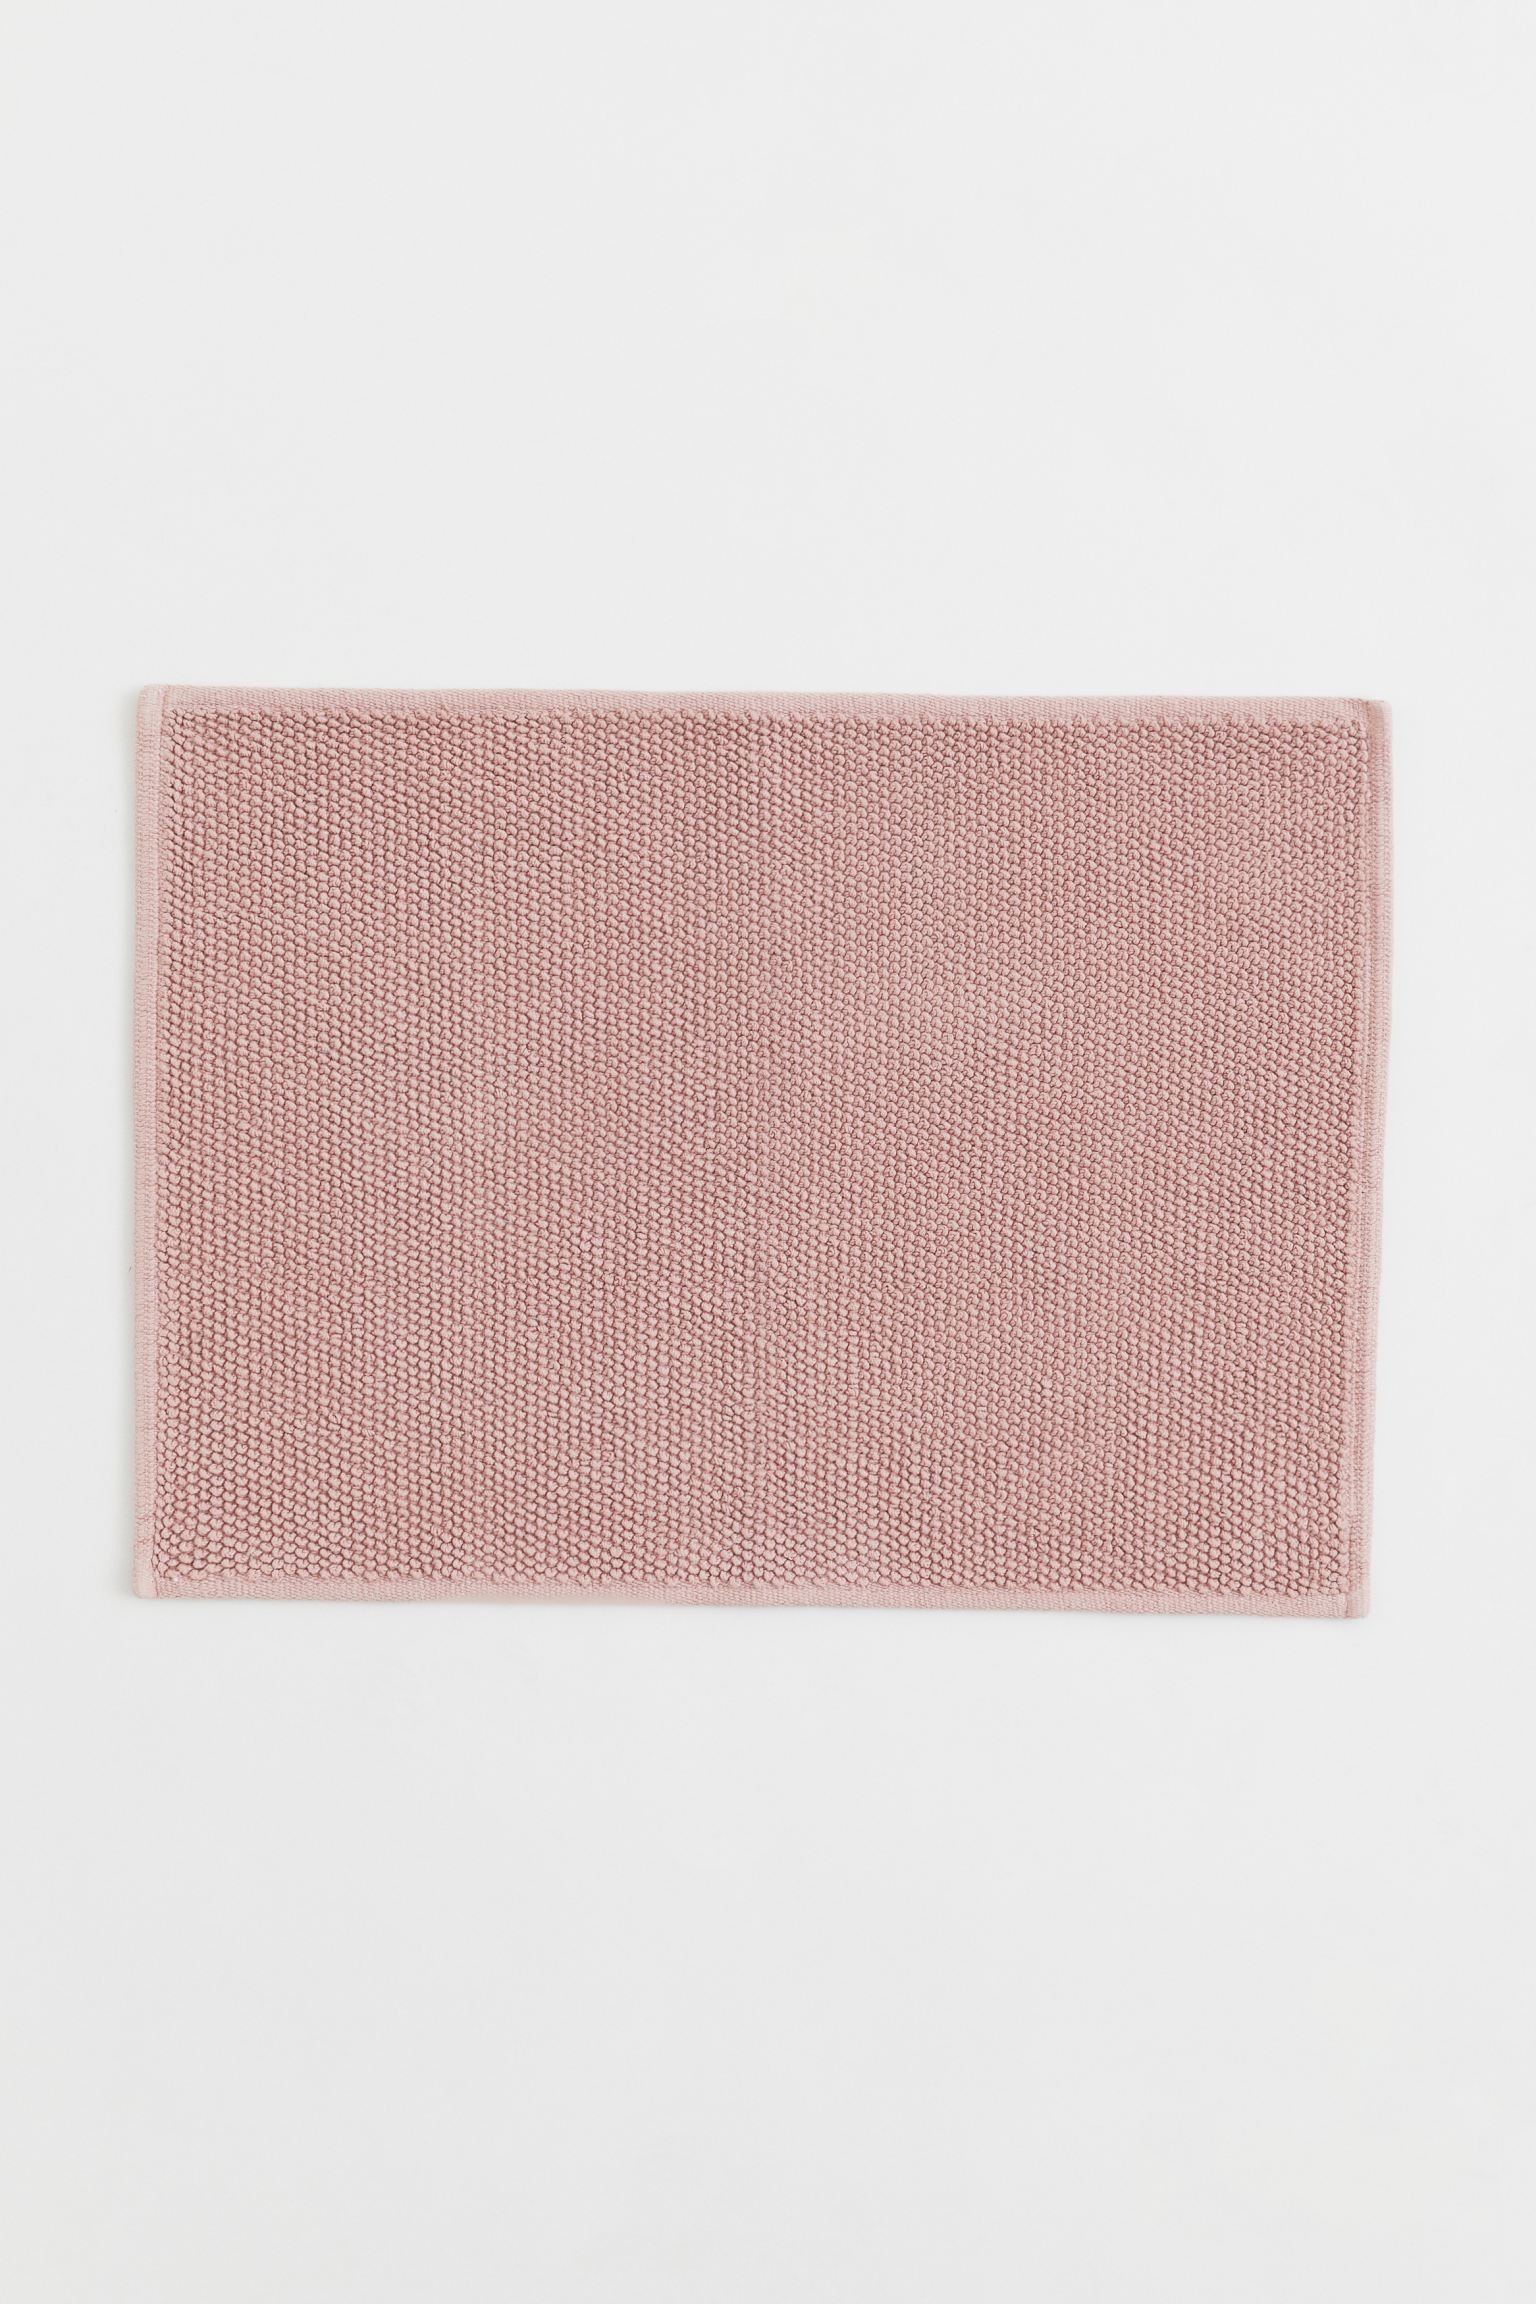 H&M Home Хлопковый коврик для ванной, светло-розовый, 50x70 1022528011 | 1022528011